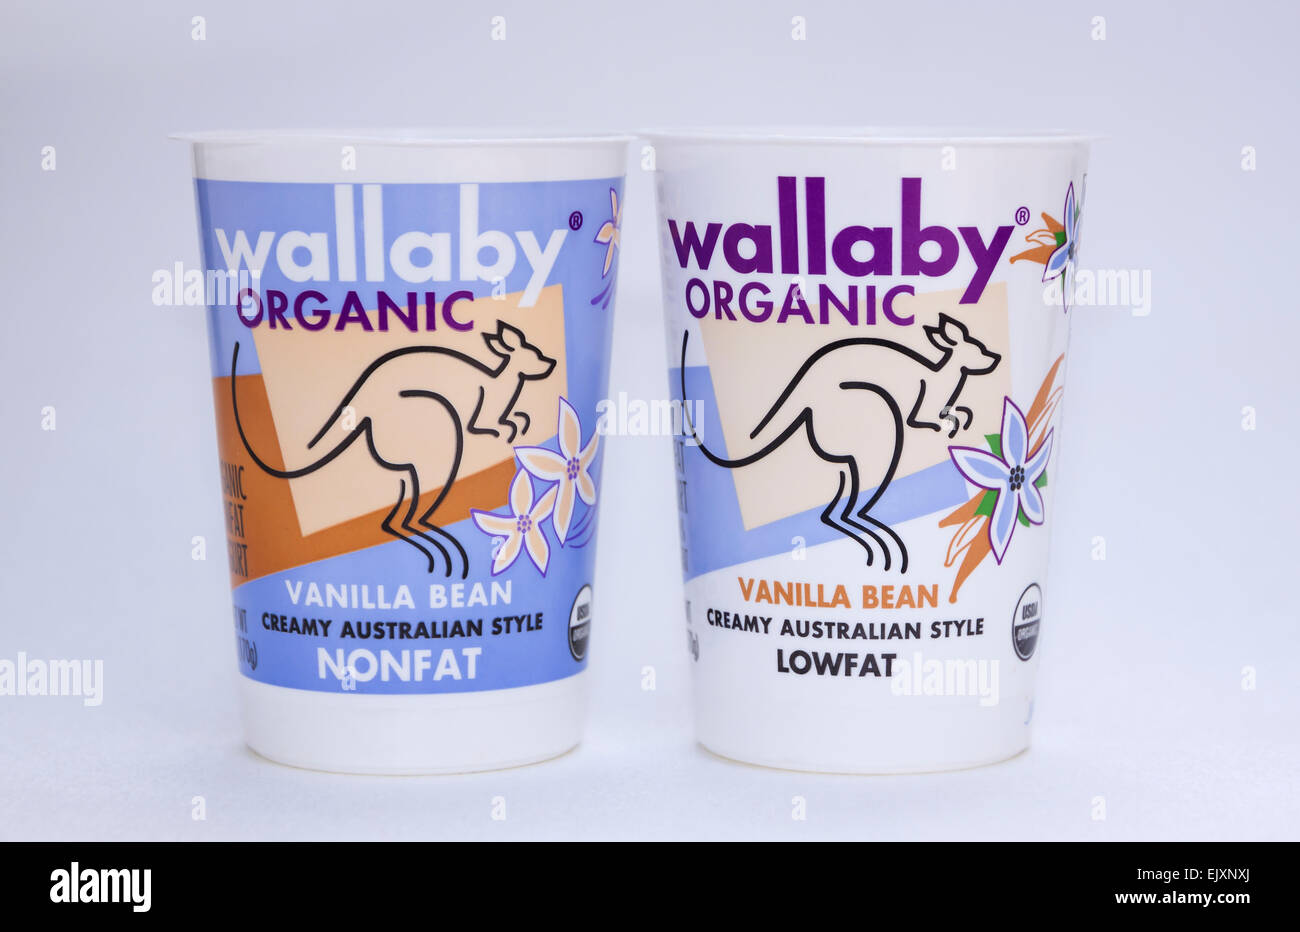 E scremato lowfat yogurt contenitori della stessa marca, Wallaby. Foto Stock